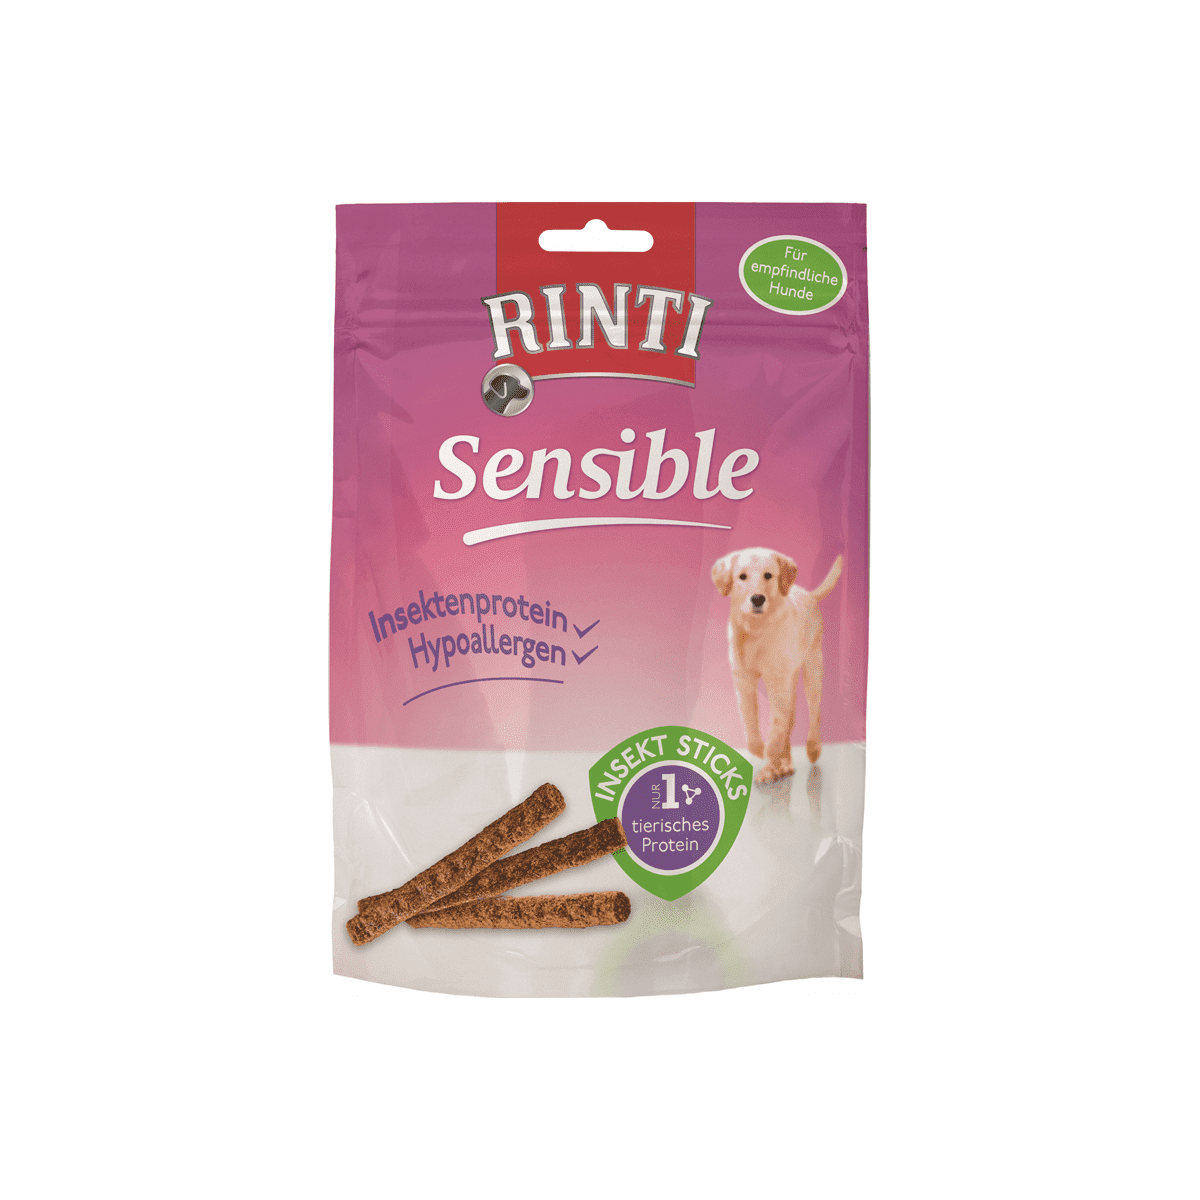 Artikel mit dem Namen Rinti Sensible Snack Insekt Sticks im Shop von zoo.de , dem Onlineshop für nachhaltiges Hundefutter und Katzenfutter.